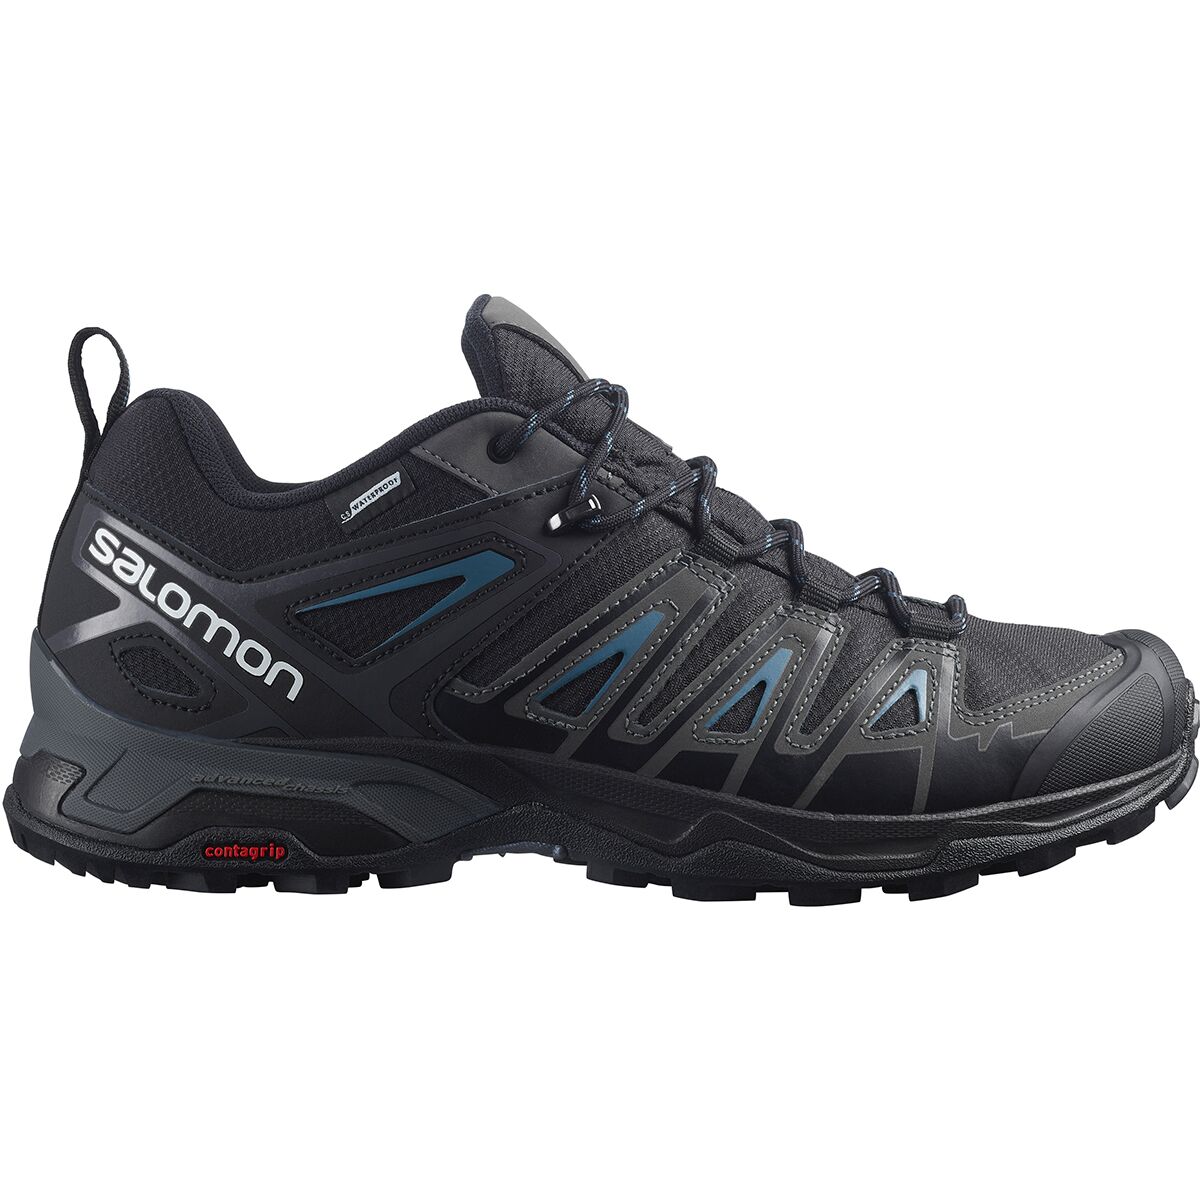 Salomon X Ultra CSWP Hiking Shoe - Men's - Footwear